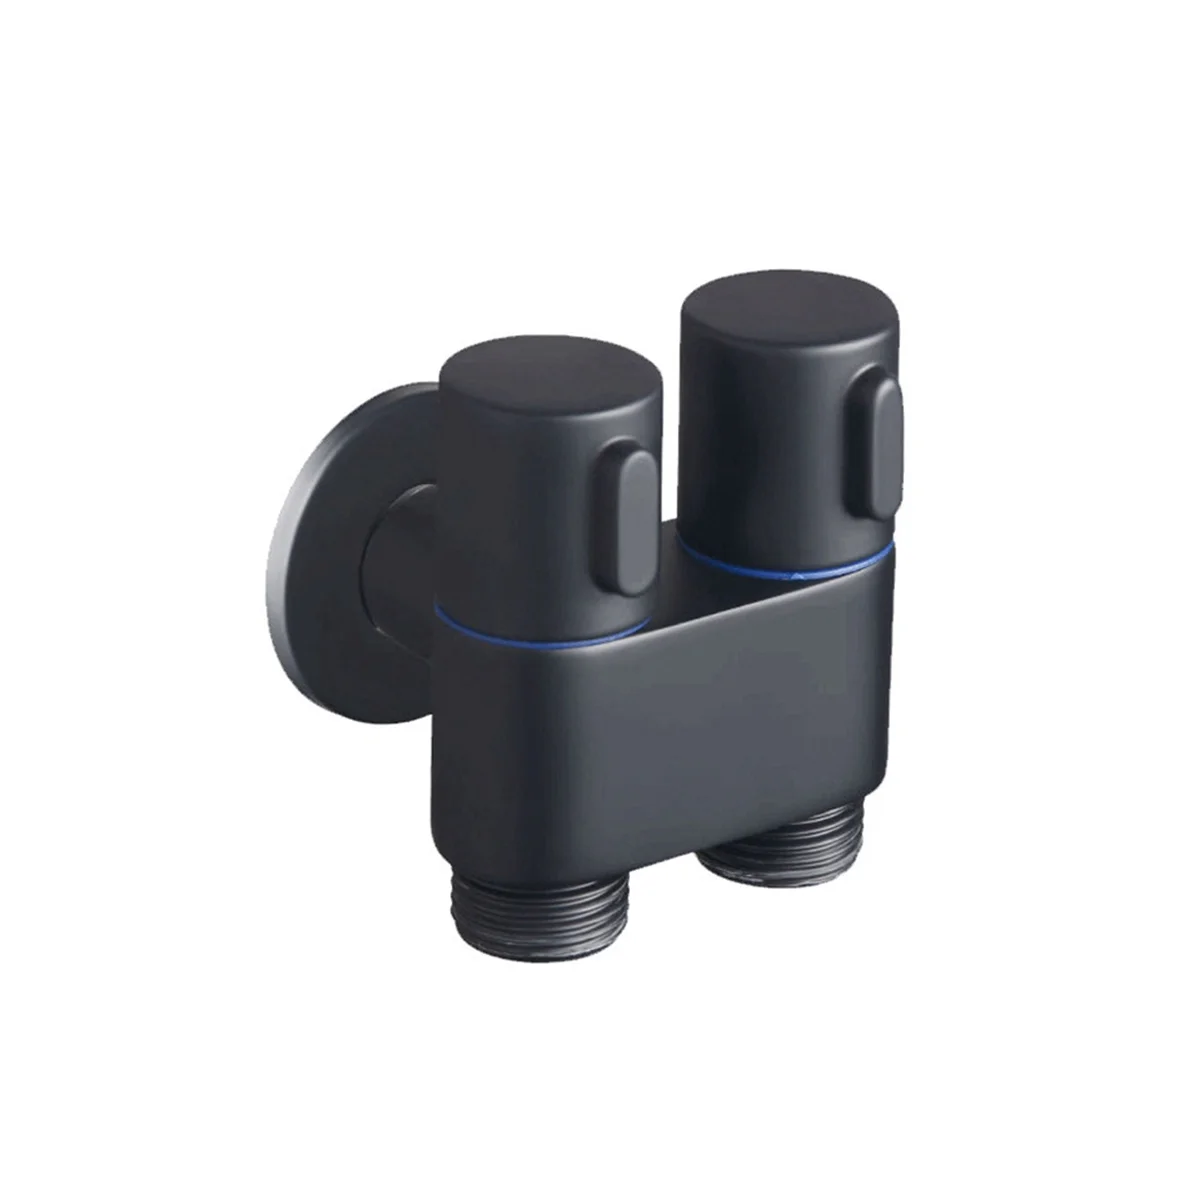 Настенный смеситель 1 на 2 выхода, поворотный угловой клапан, смеситель для ванной комнаты с двойным управлением для самоочистки (черный)